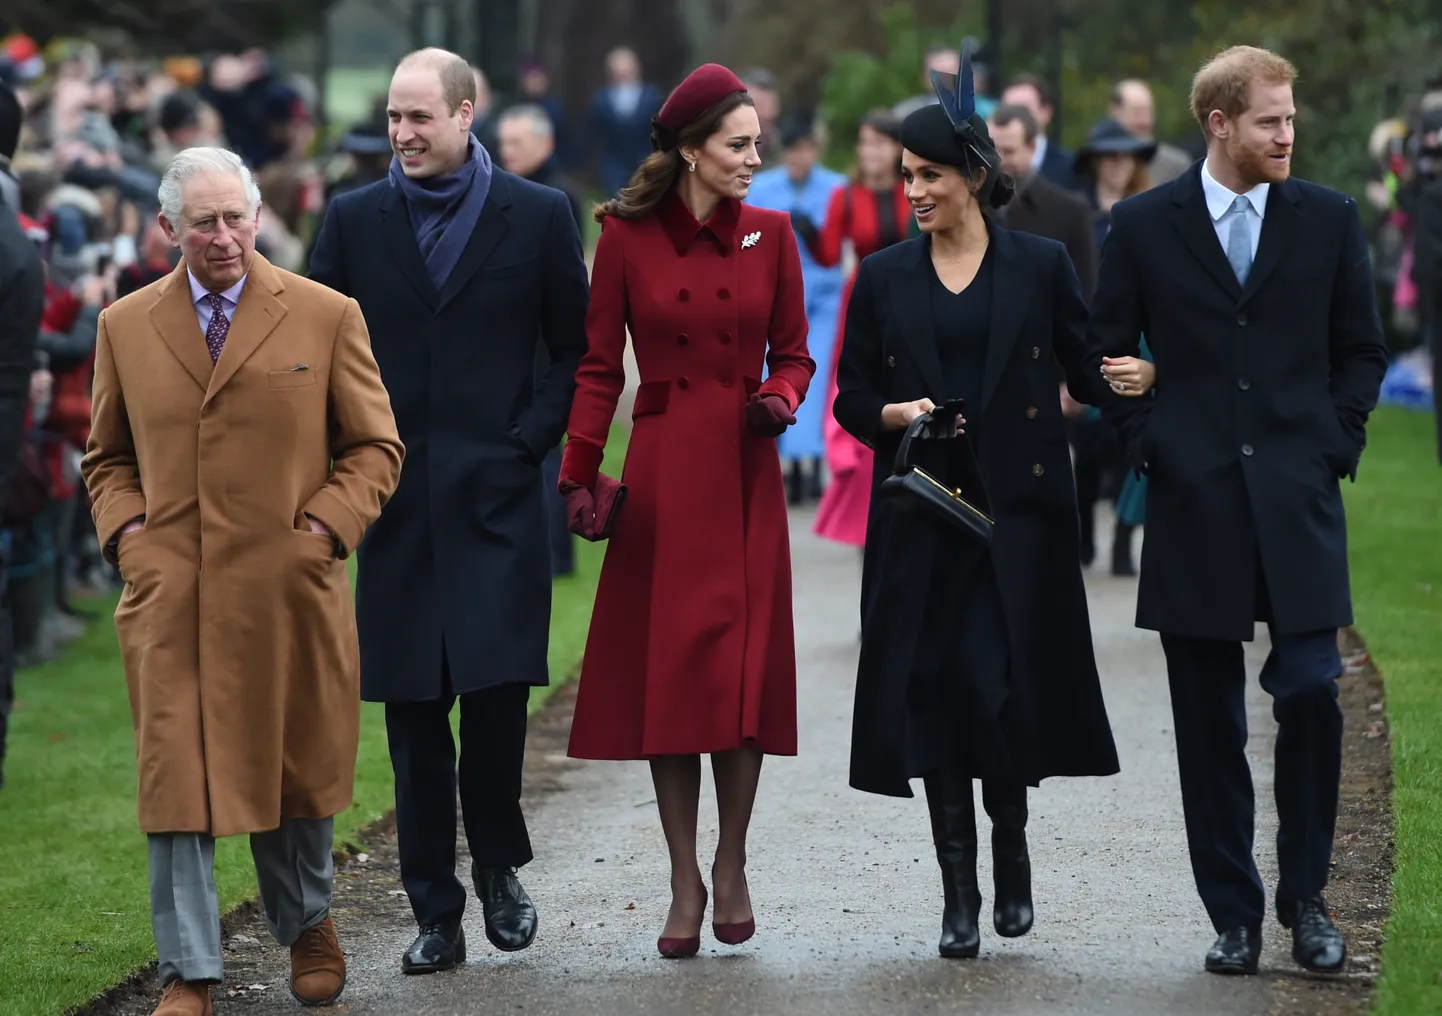 Принц Уэльский, герцог Кембриджский, герцогиня Кембриджская, герцогиня Сассекская и герцог Сассекский прибывают для участия в рождественской утренней церковной службе в церкви Святой Марии Магдалины в Сандрингеме, Норфолк.